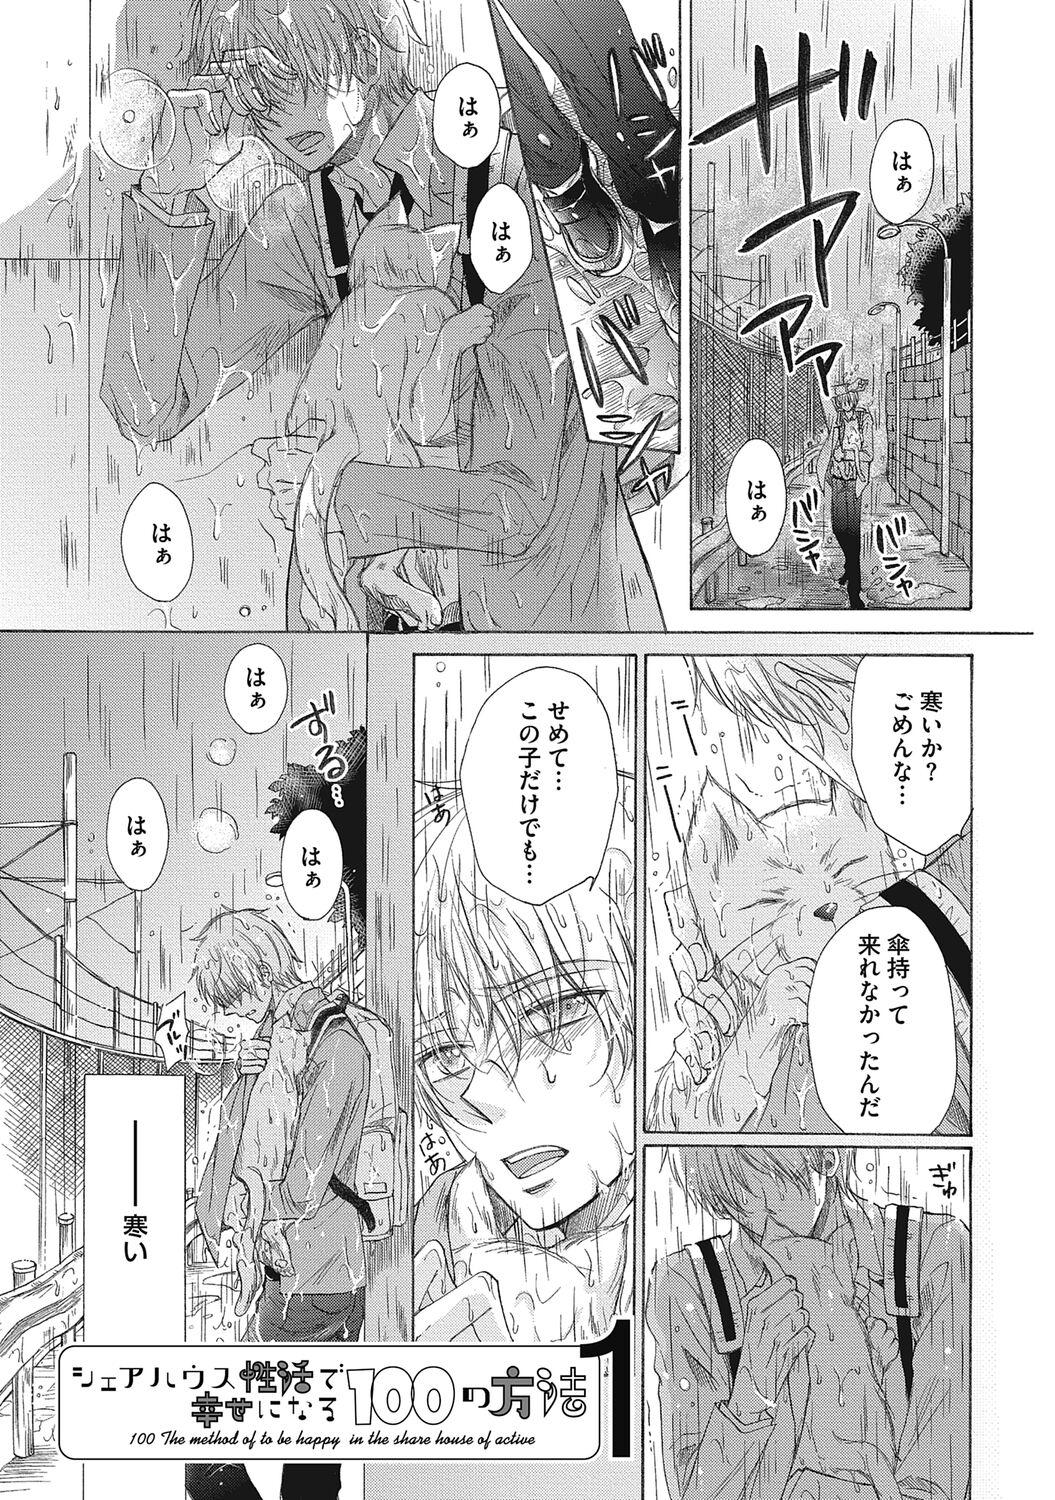 Solo Girl Share House Seikatsu de Shiawase ni Naru 100 no Houhou 3way - Page 5